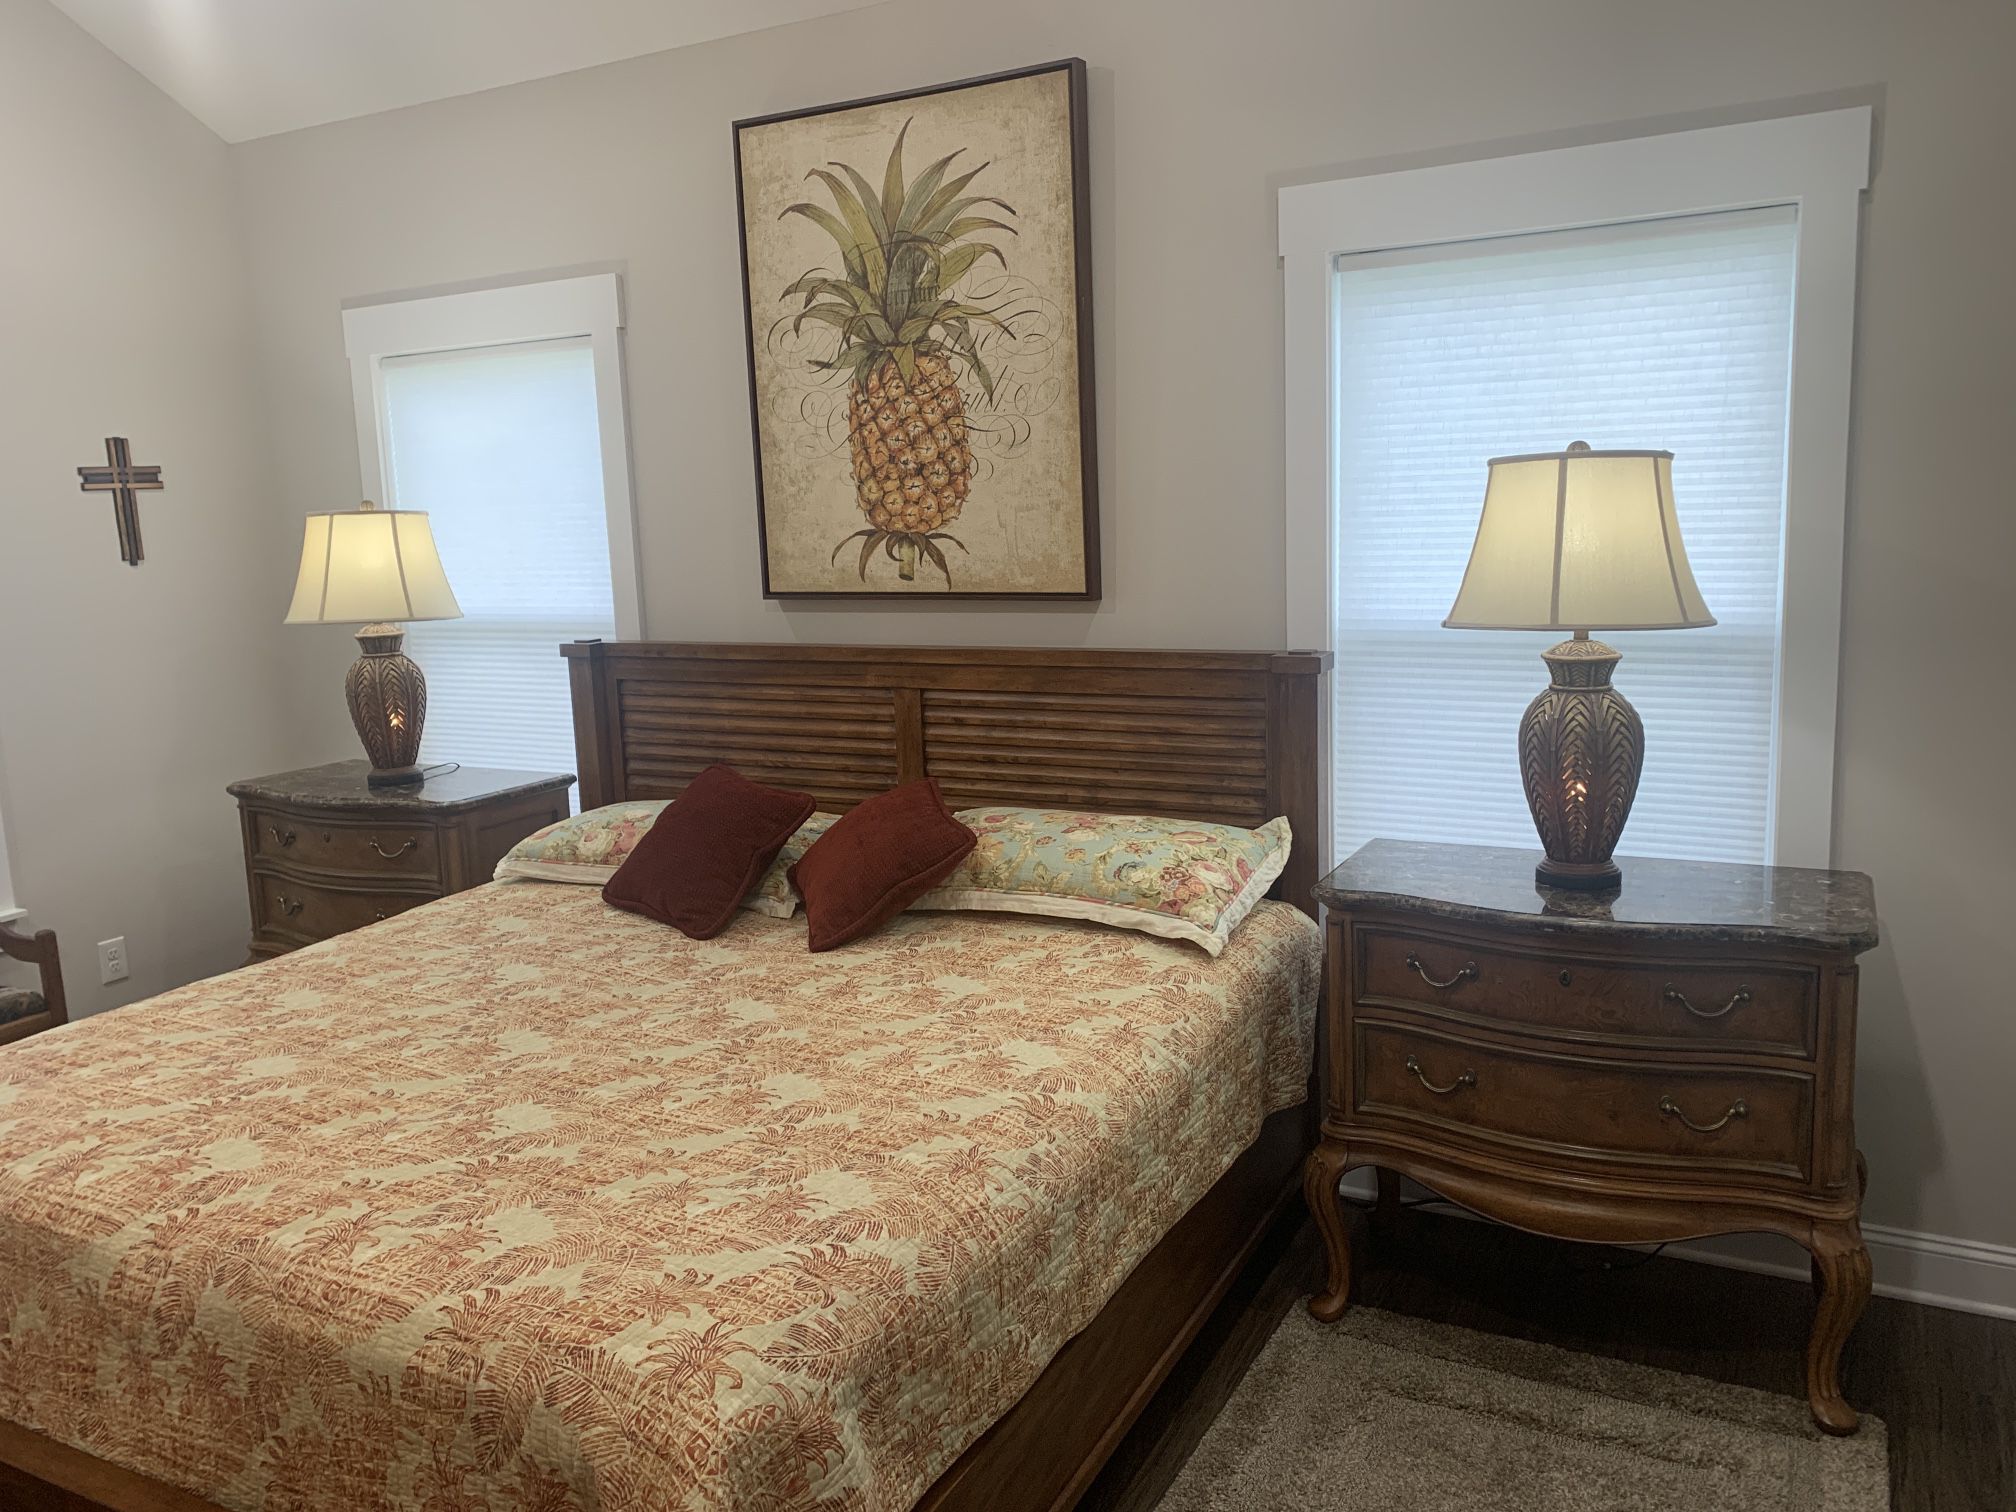 King Size Burlewood Bedroom Set W/ Adjustable Beds & More 